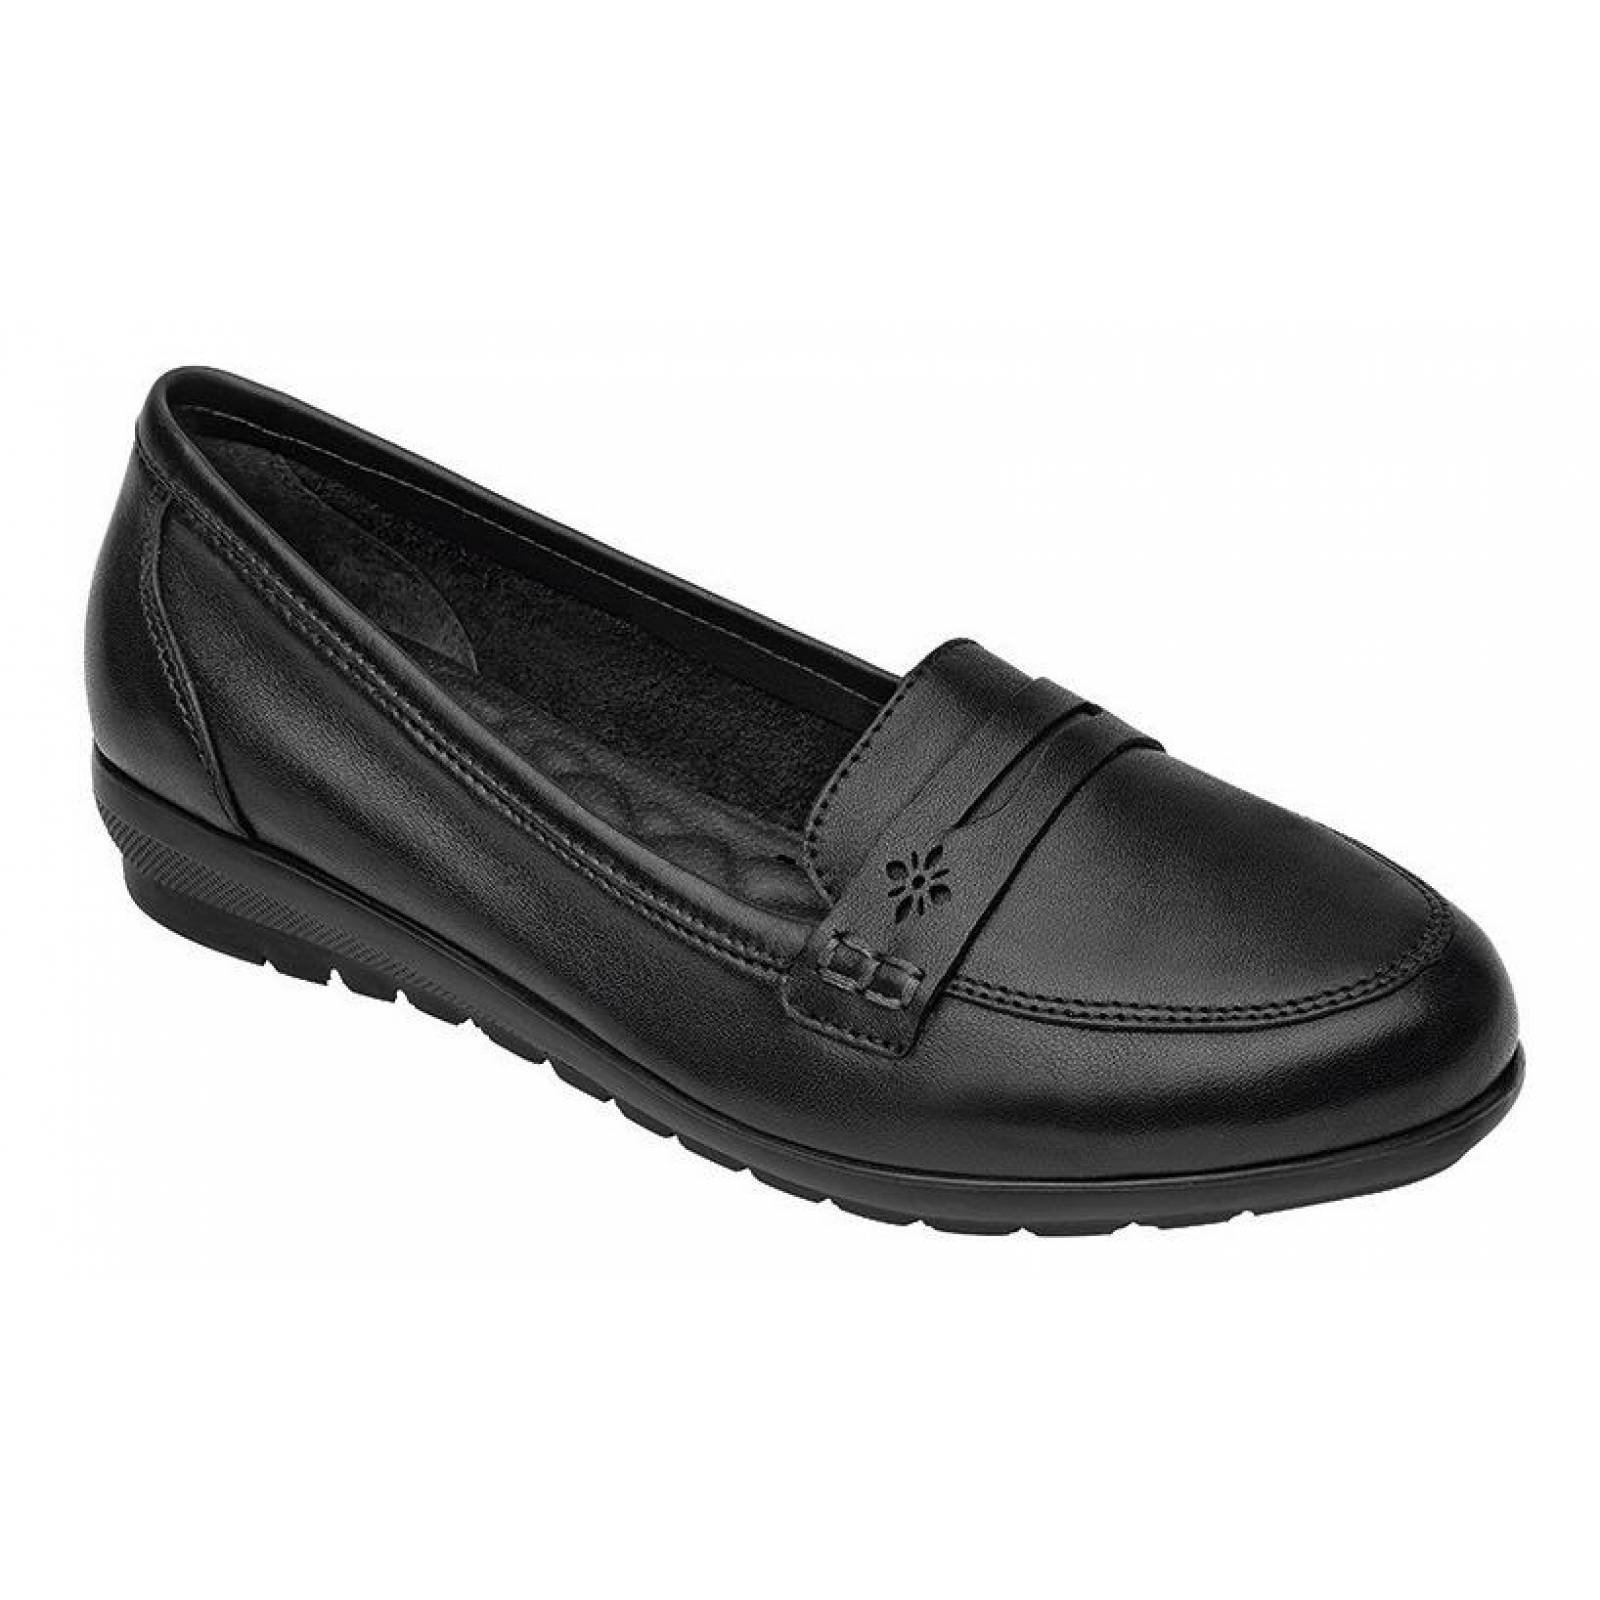 Calzado Dama Mujer Zapato Flexi Confort En Piel Negro Cómodo 